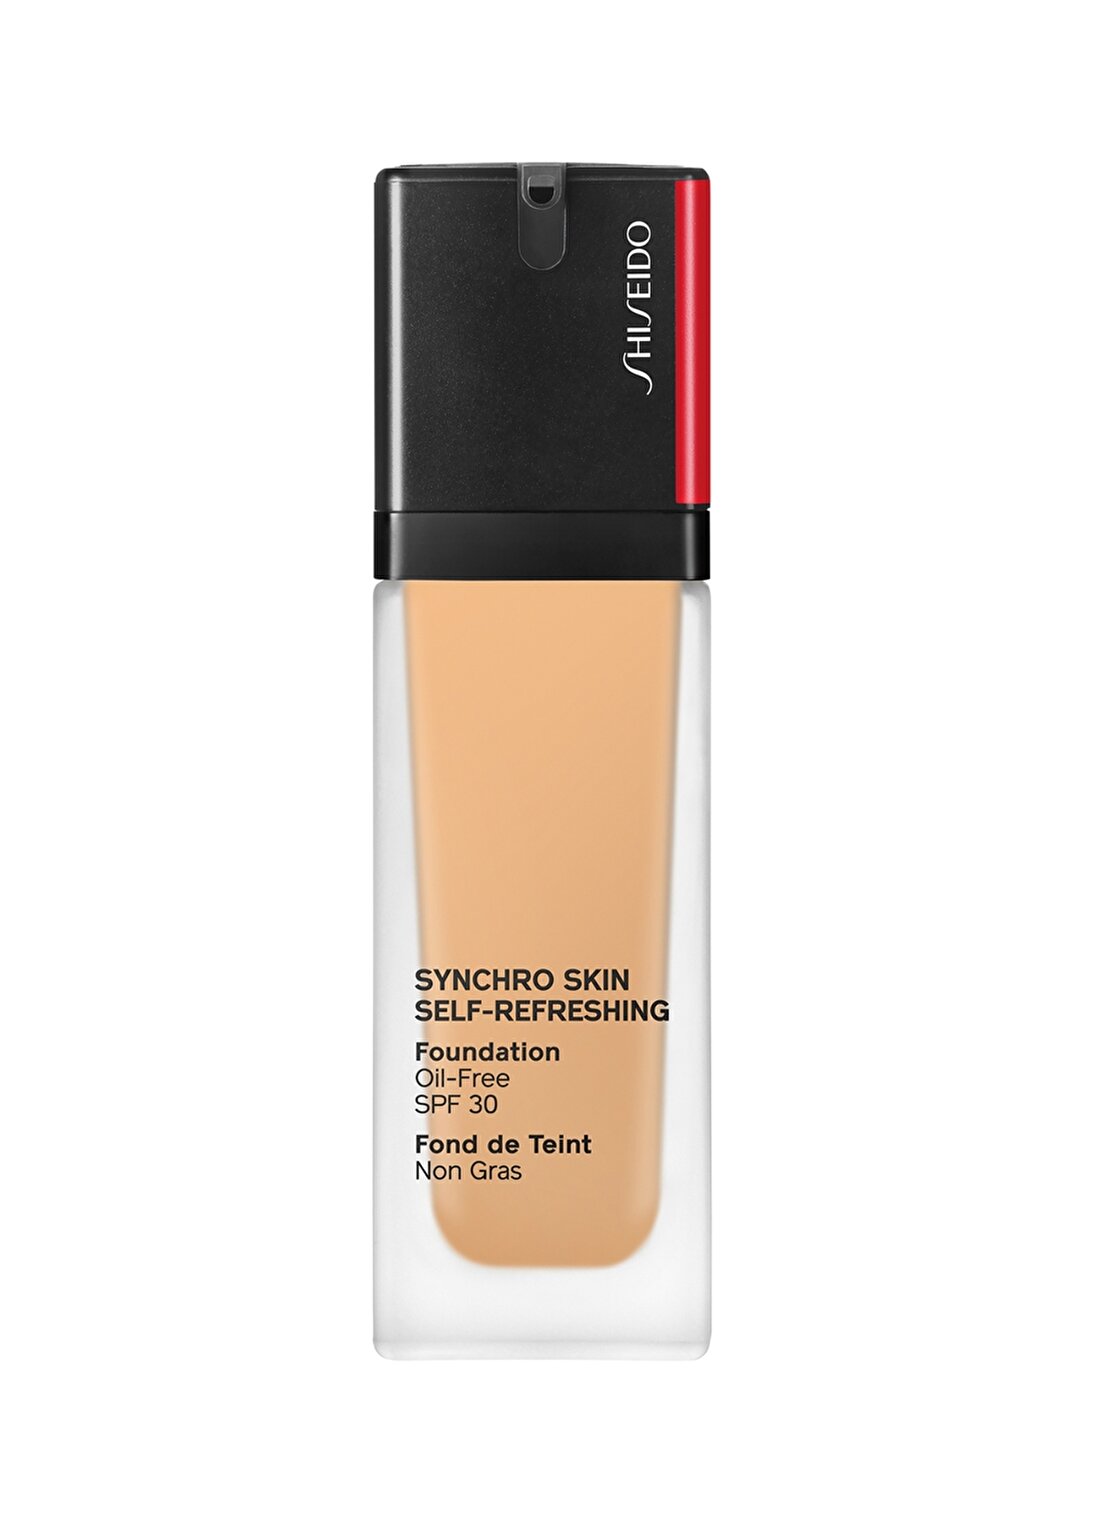 Shiseido Synchro Skin Self-Refreshing Foundation 350 Fondöten